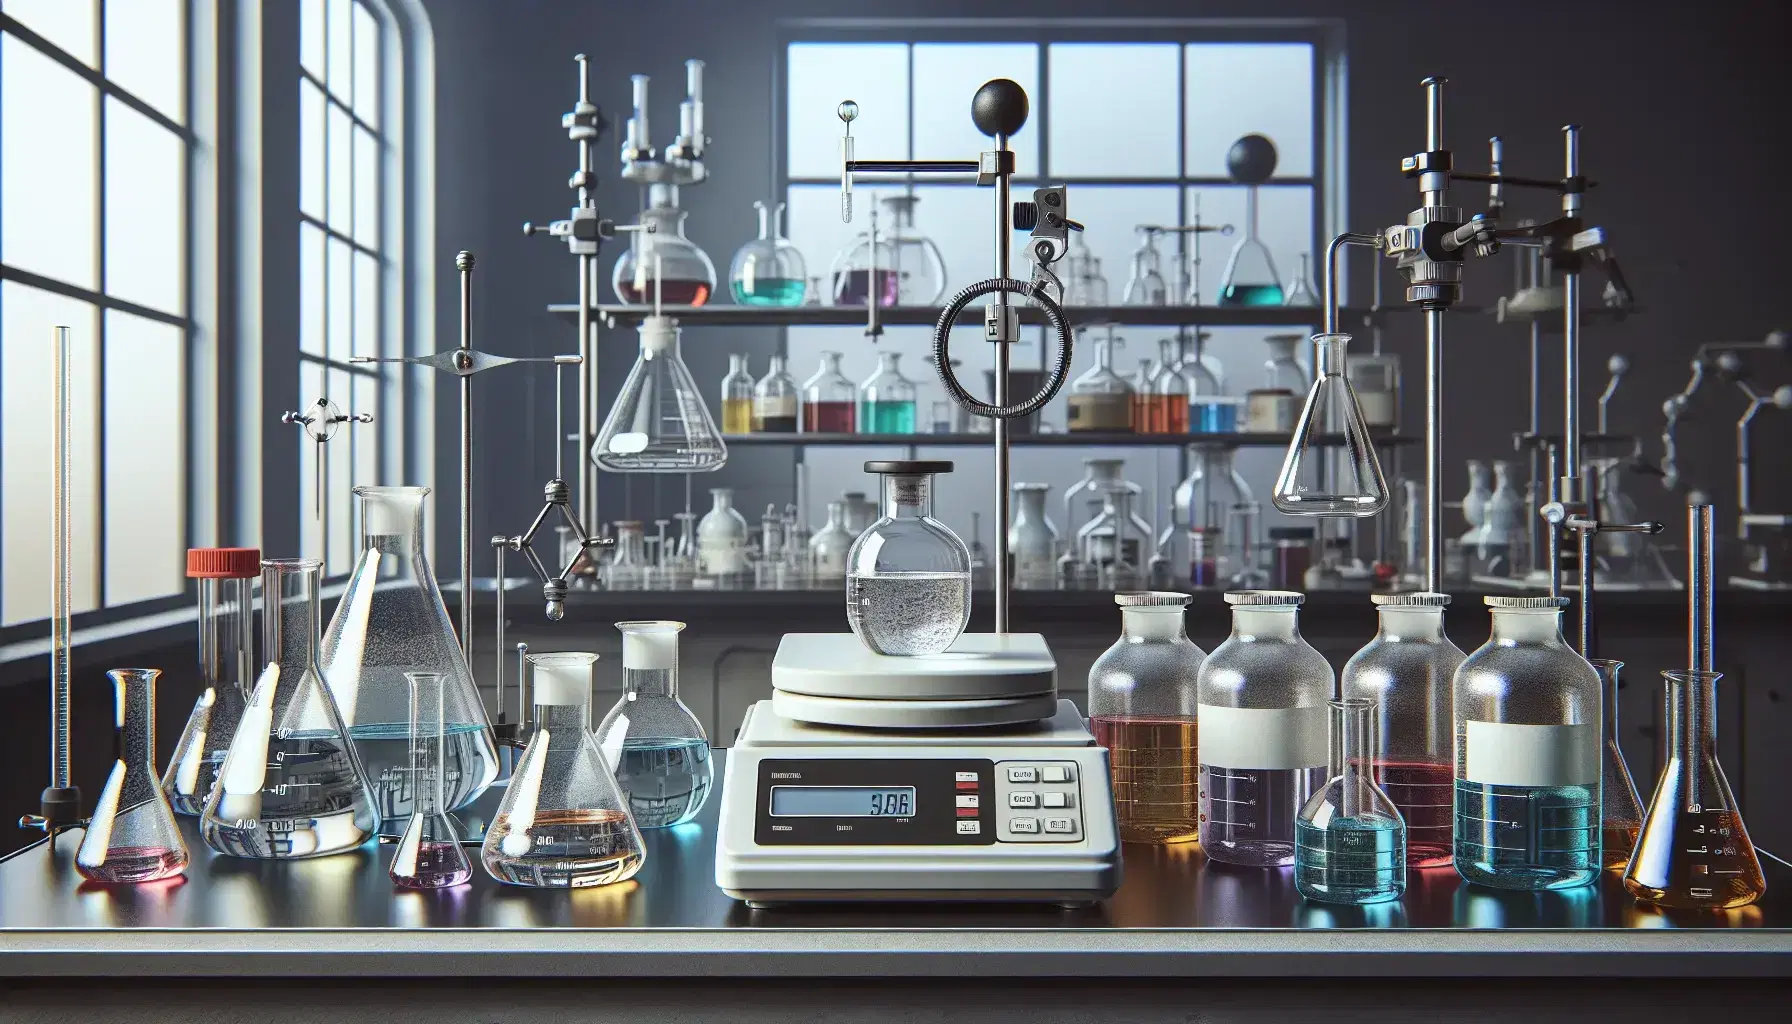 Laboratorio de química con balanza analítica, matraz Erlenmeyer en pinza universal, quemador Bunsen y estantes con frascos de reactivos de colores variados.